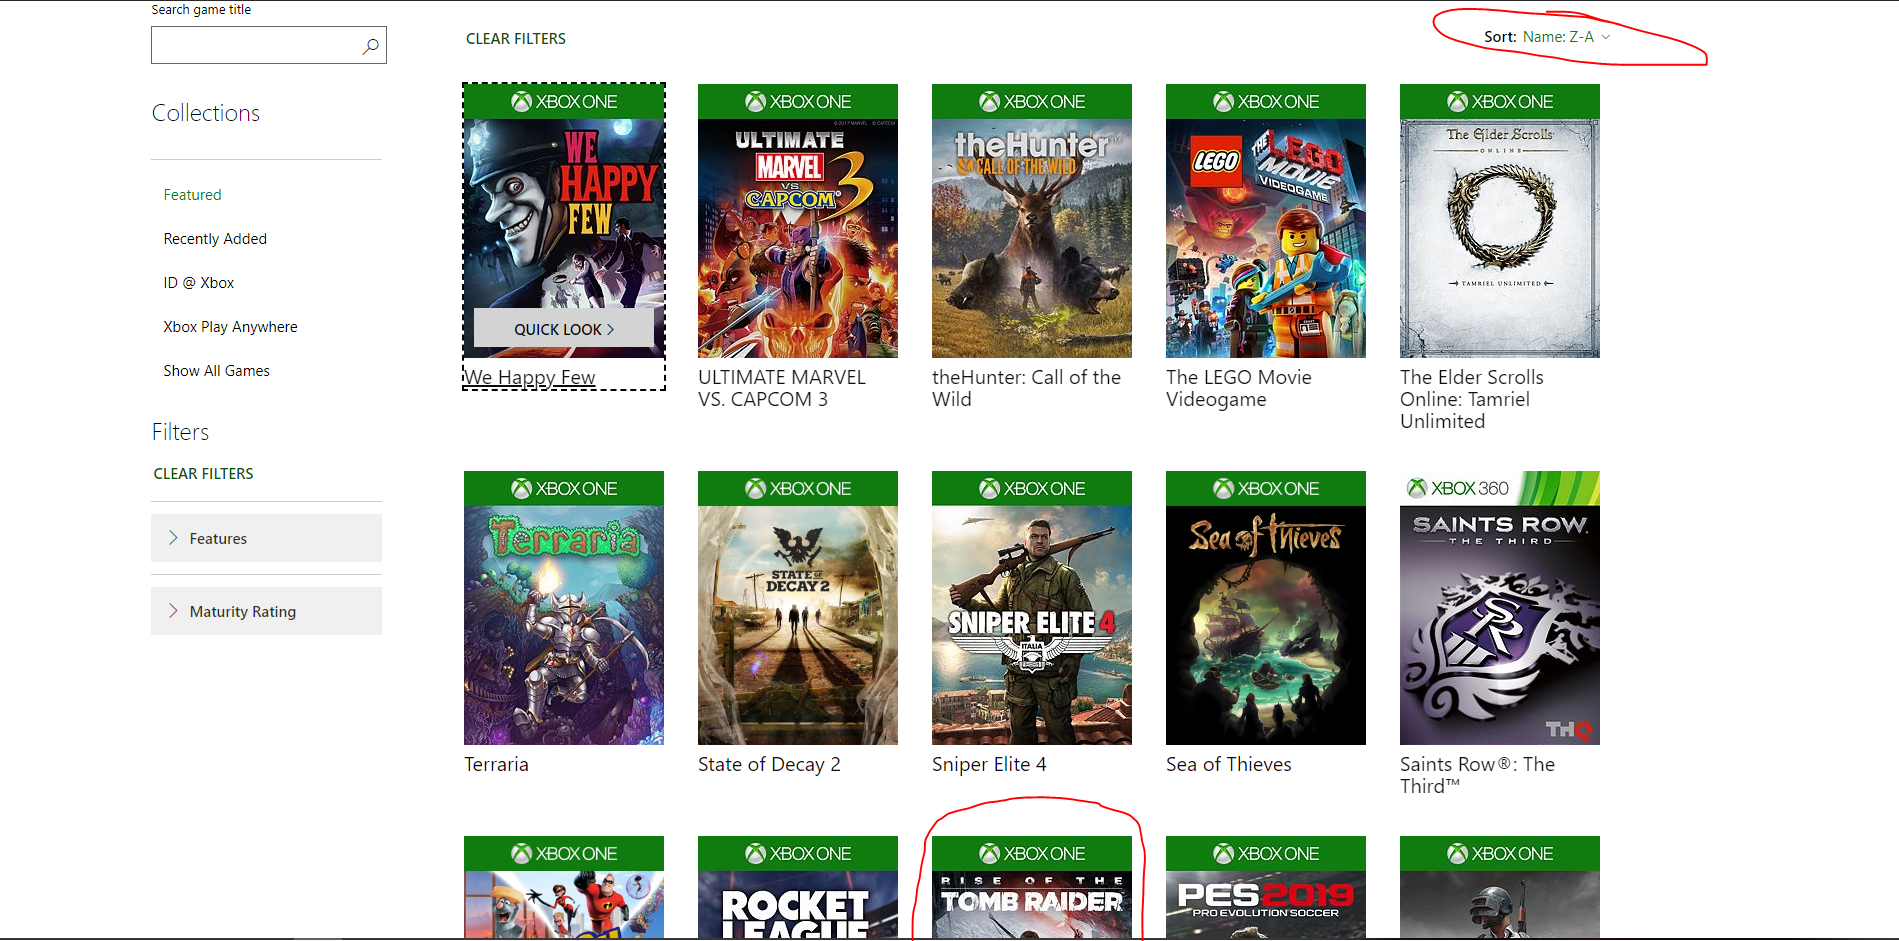 Xbox Game Pass: Sea of Thieves, Rise of the Tomb Raider, Super Lucky's Tale  e outros jogos chegam em março – Microsoft News Center Brasil